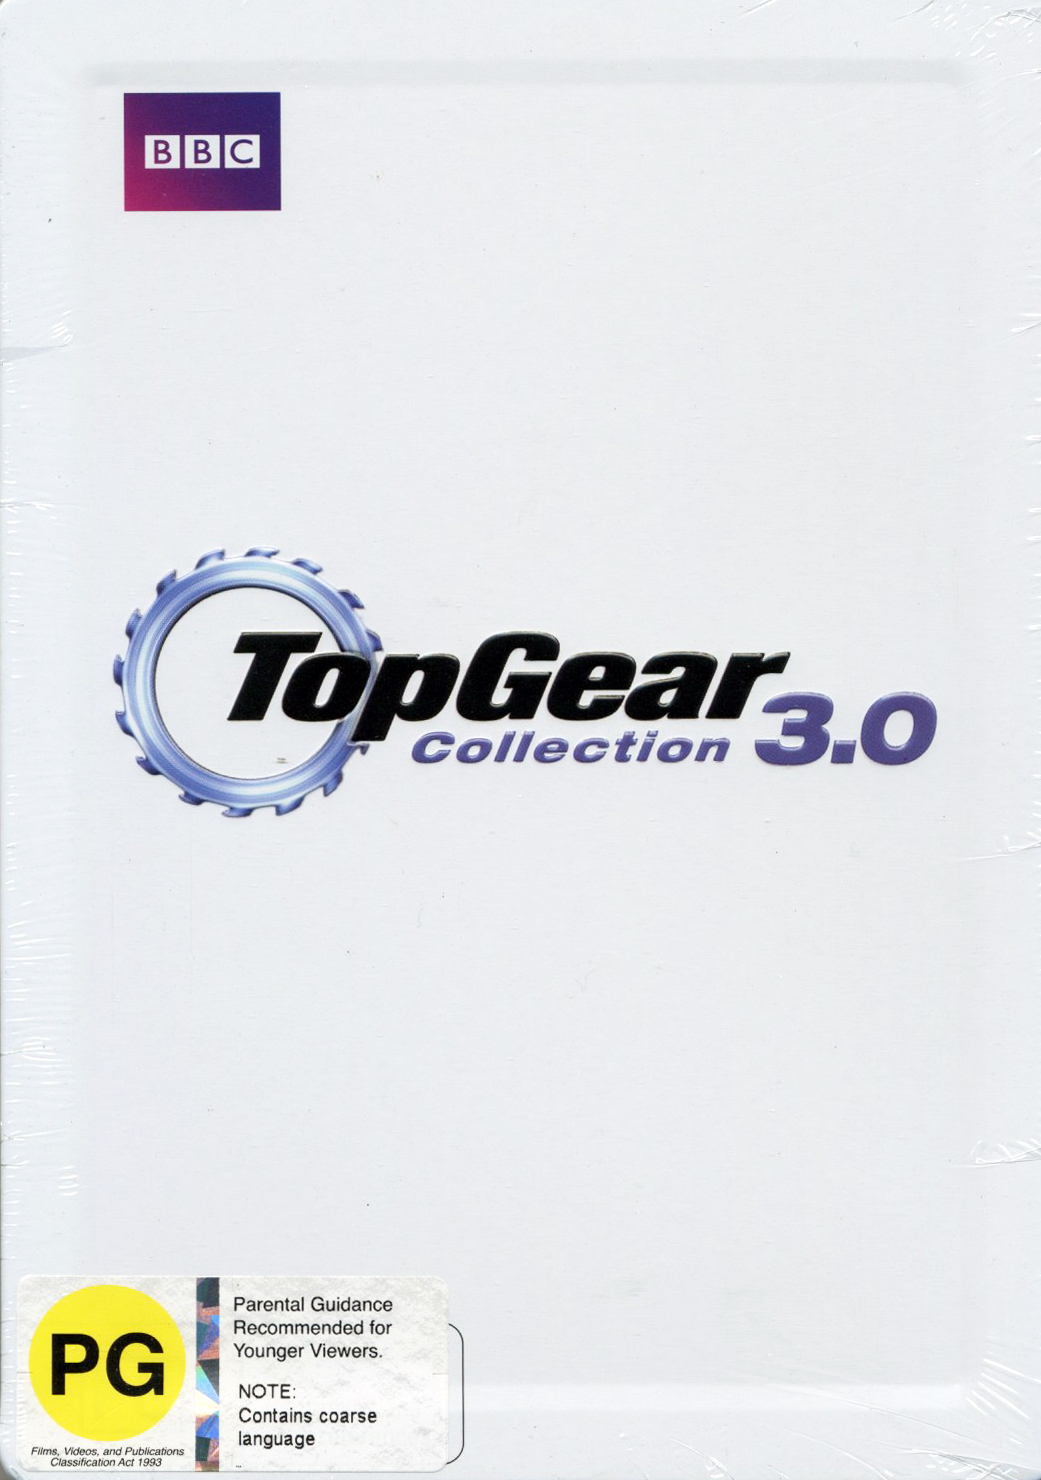 Top Collection 3.0 Top Gear Fandom